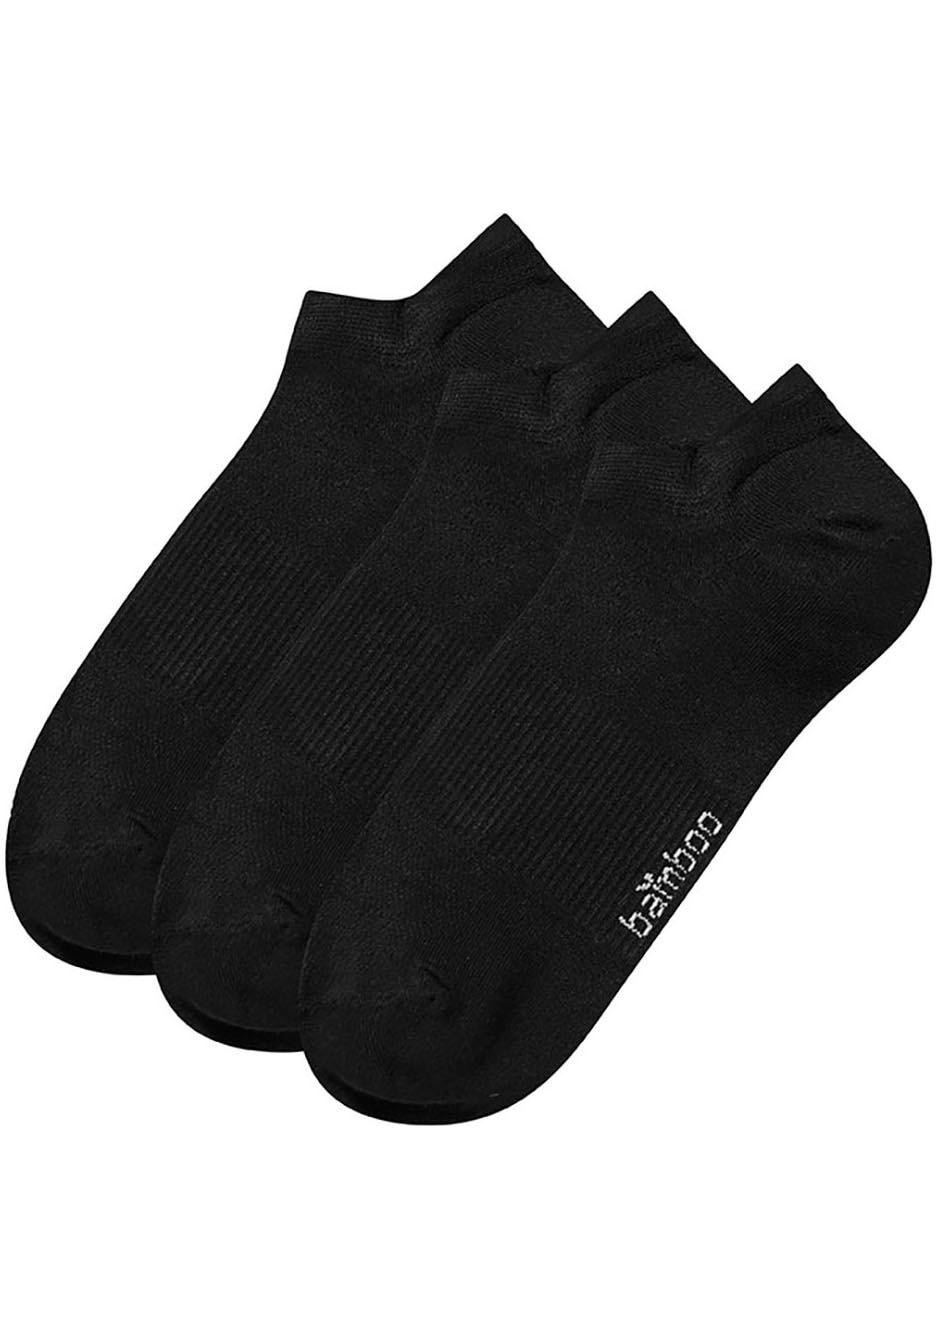 XTREME sockswear Füßlinge, (6 Paar)